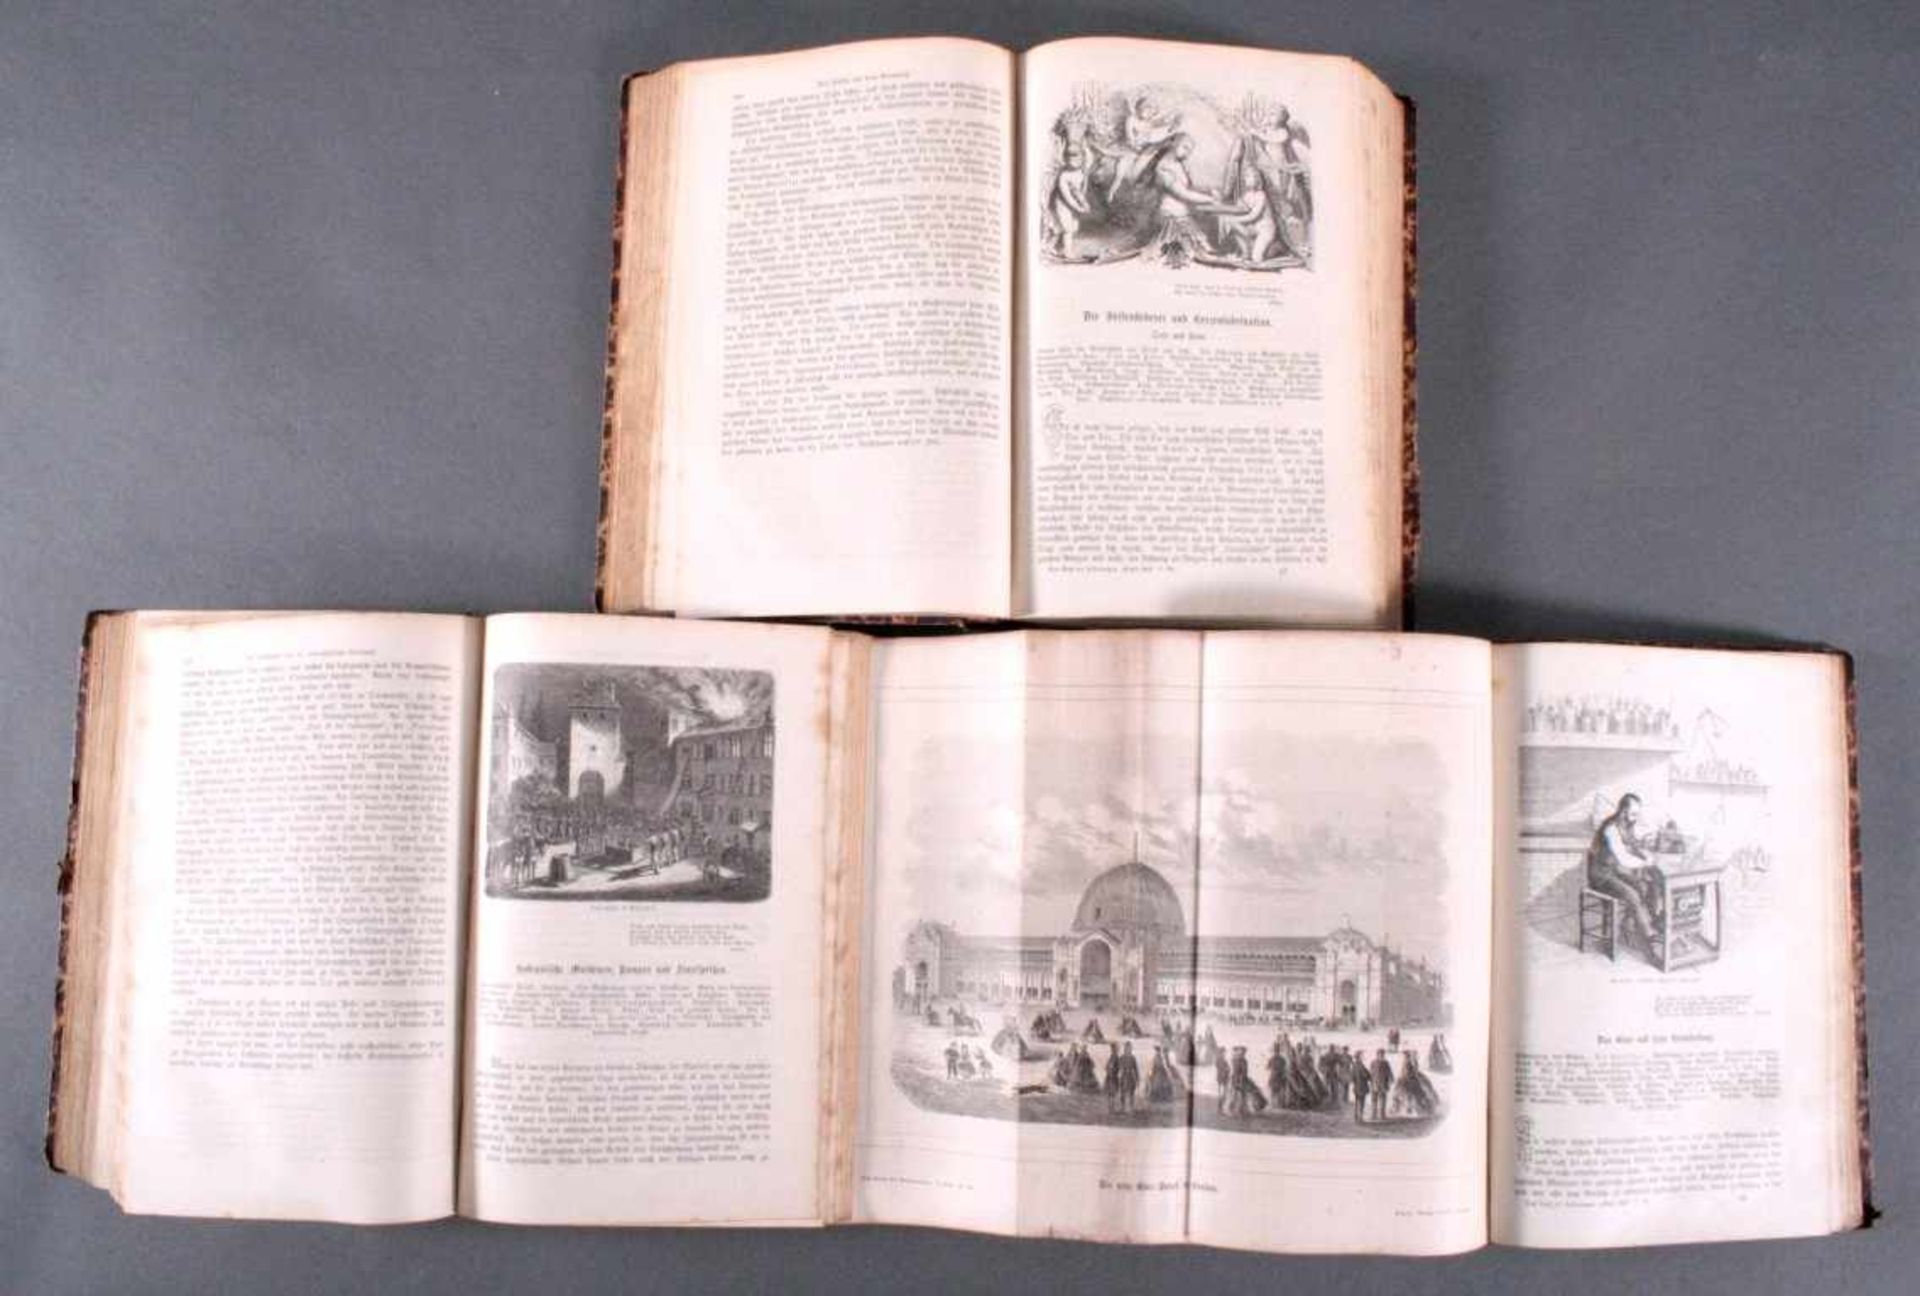 Das neue Buch der Erfindungen, Gewerbe und Industrien, 18643 Bände, Band 1,3 und 5, 1864-1867, - Bild 3 aus 3